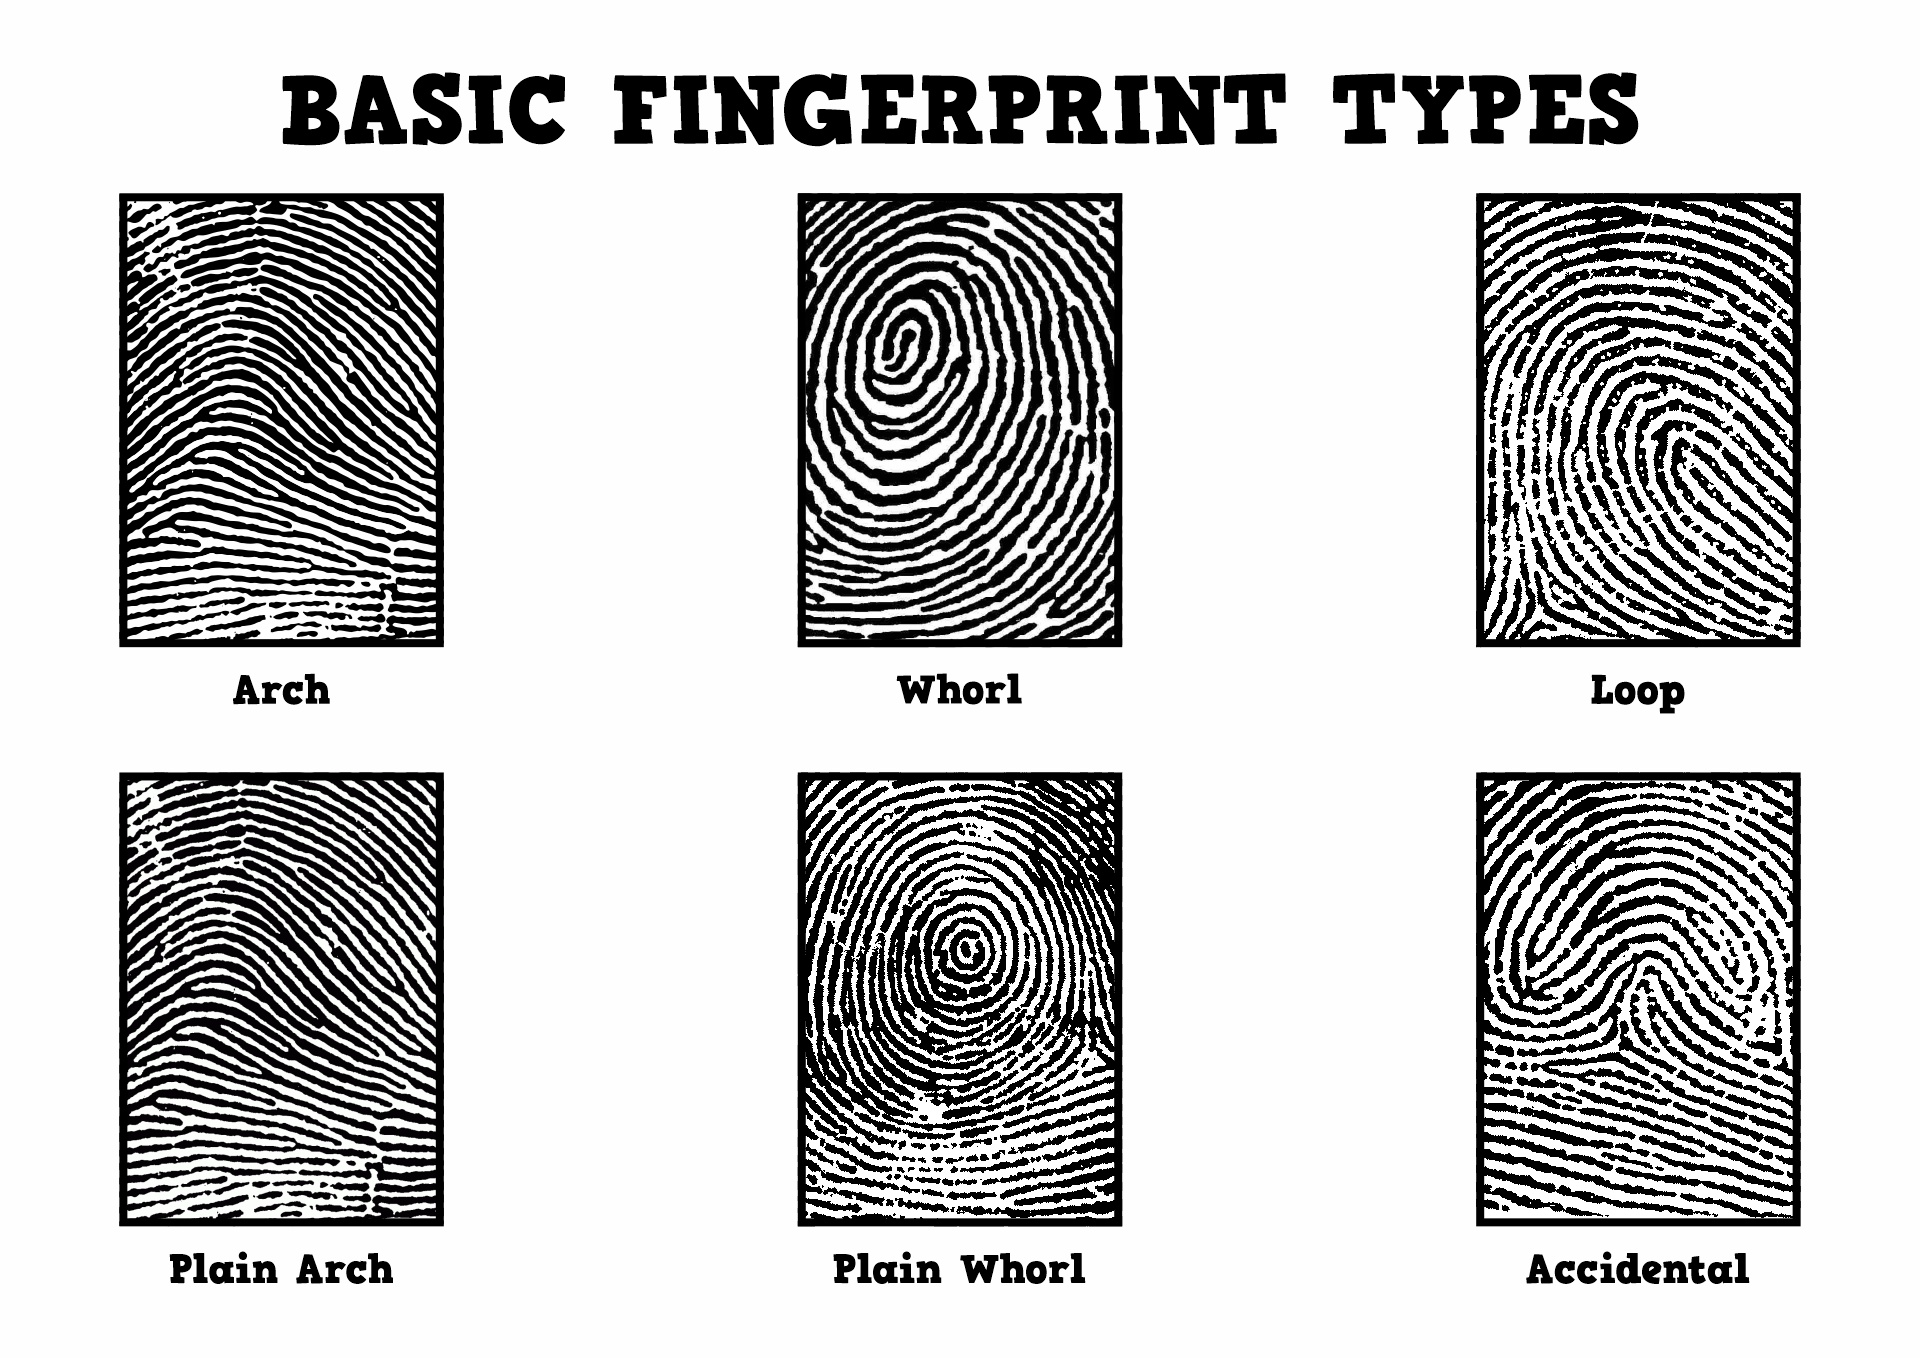 Basic Types of Fingerprint Patterns